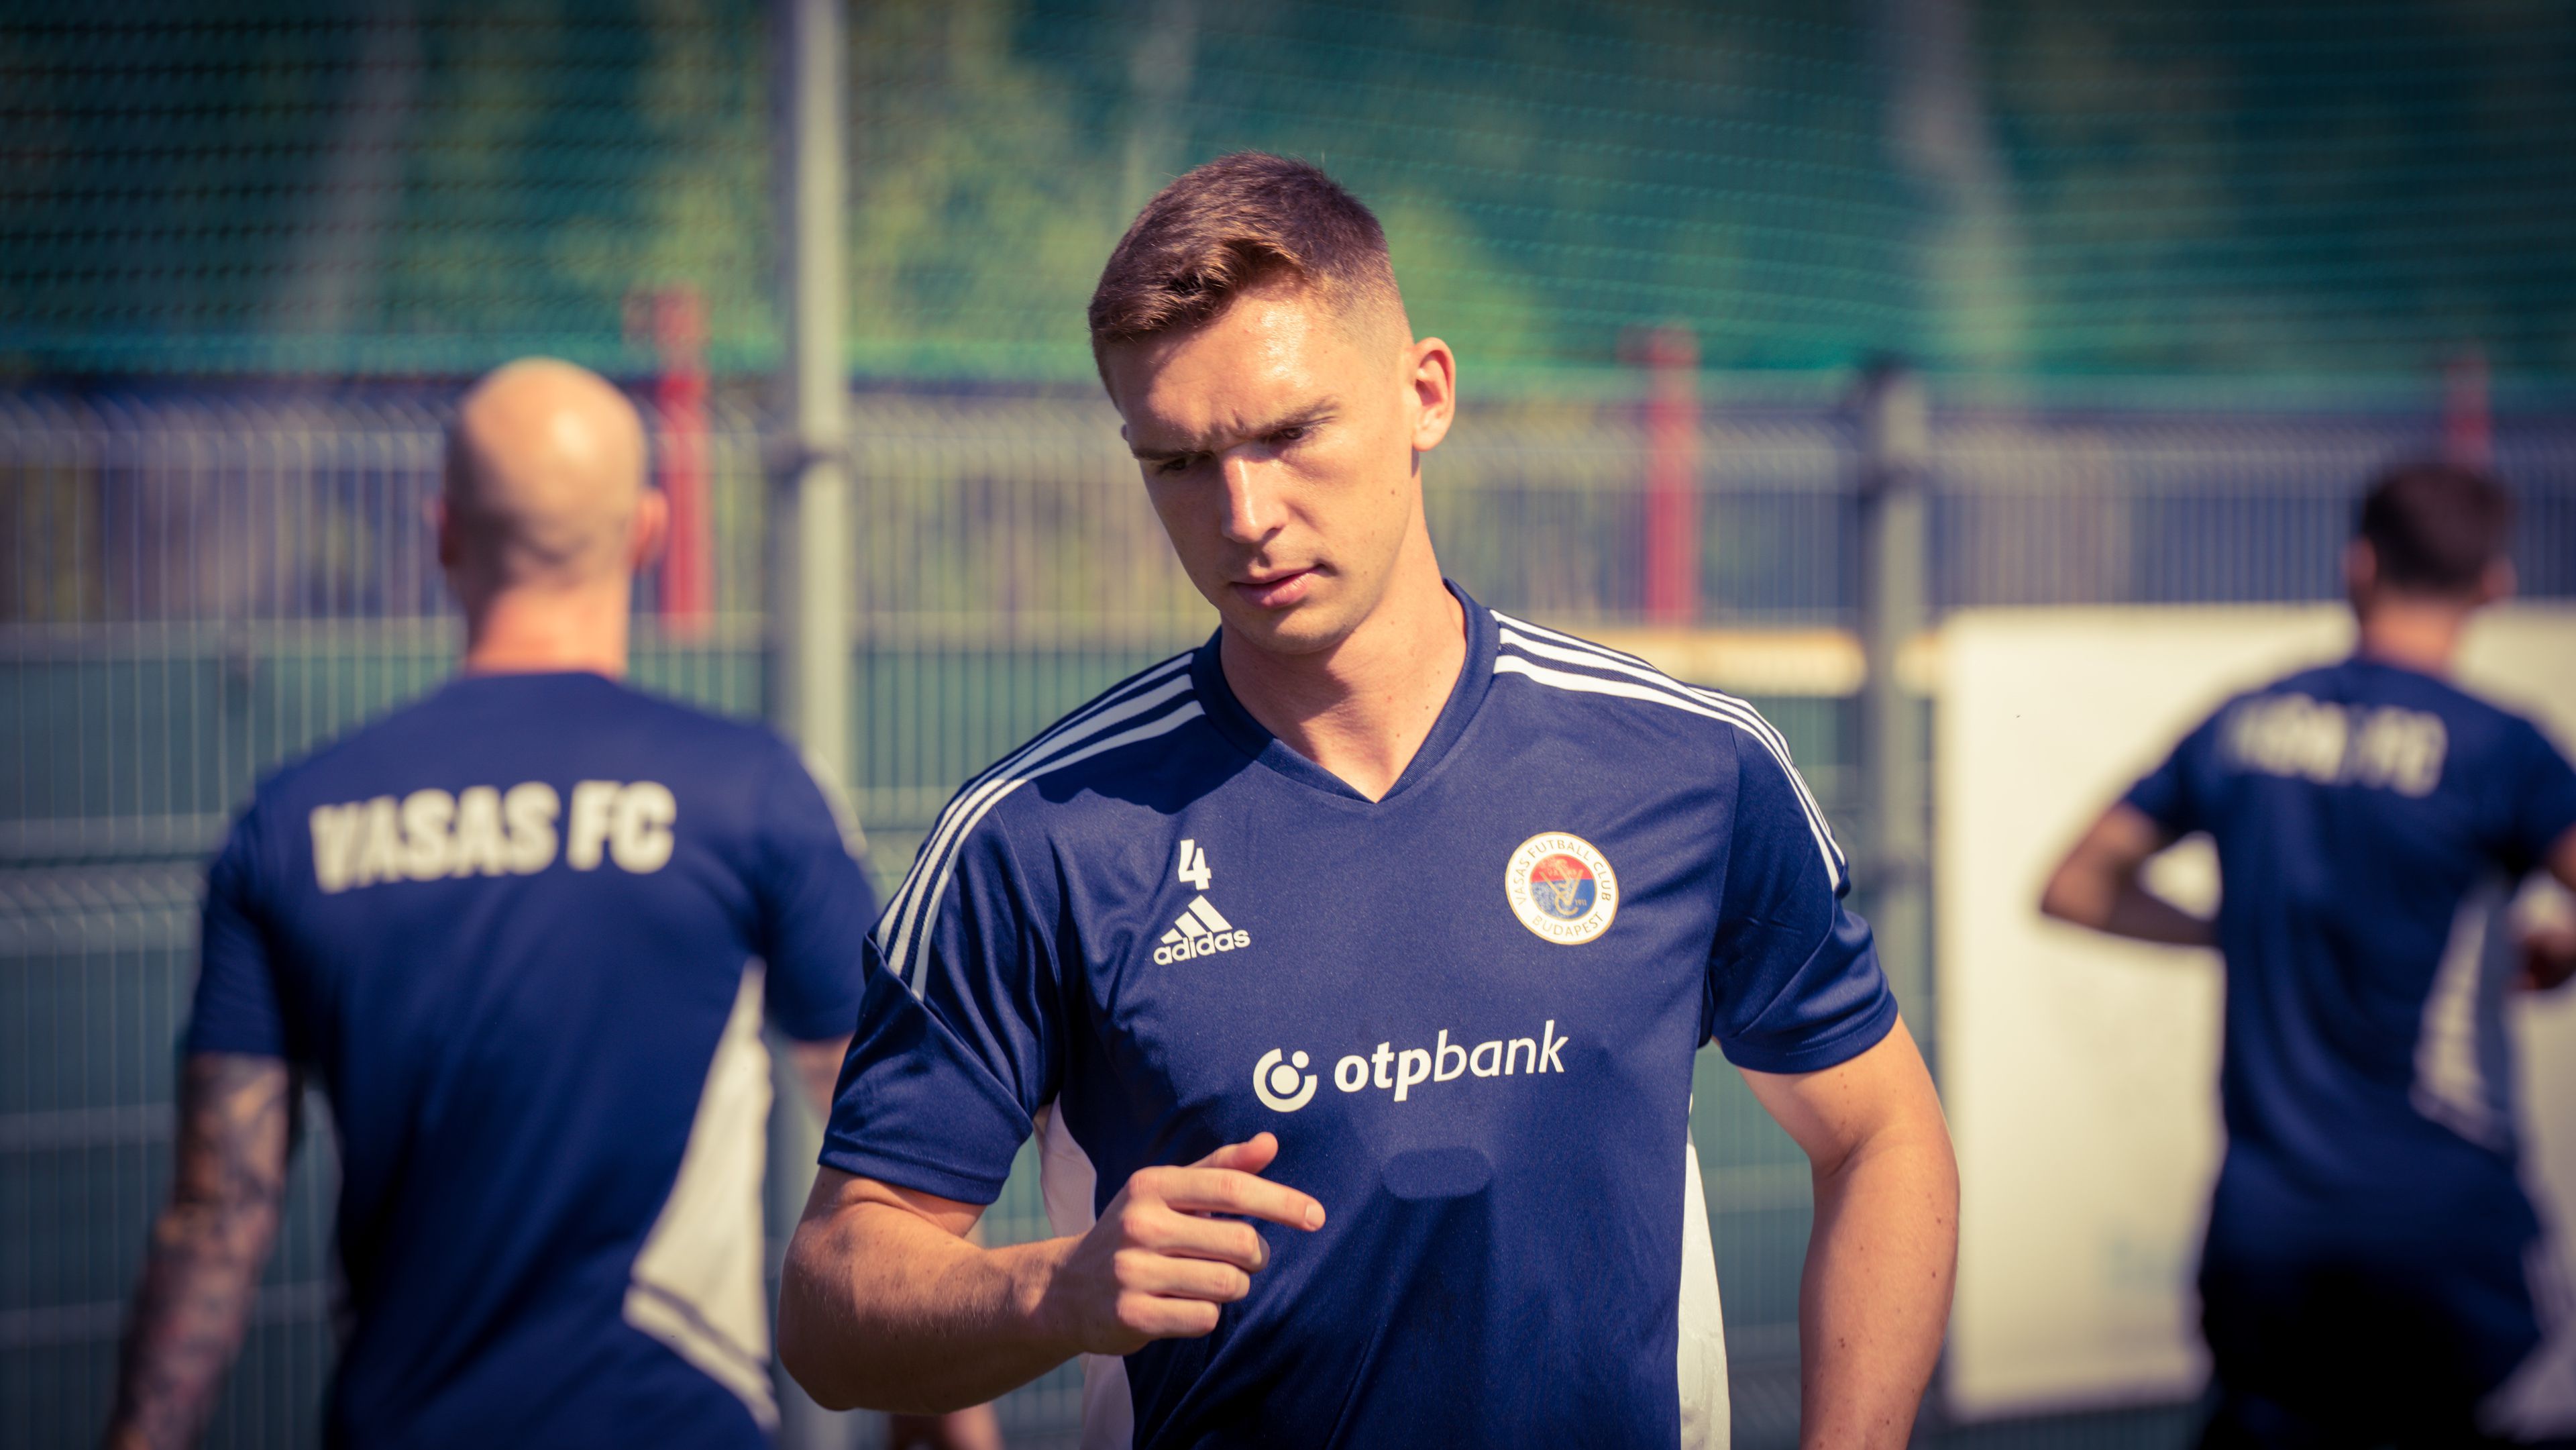 Pávkovics Bence a Vasas labdarúgója, és két célt is kitűzött maga elé. (Fotó: Cselleng Ádám)